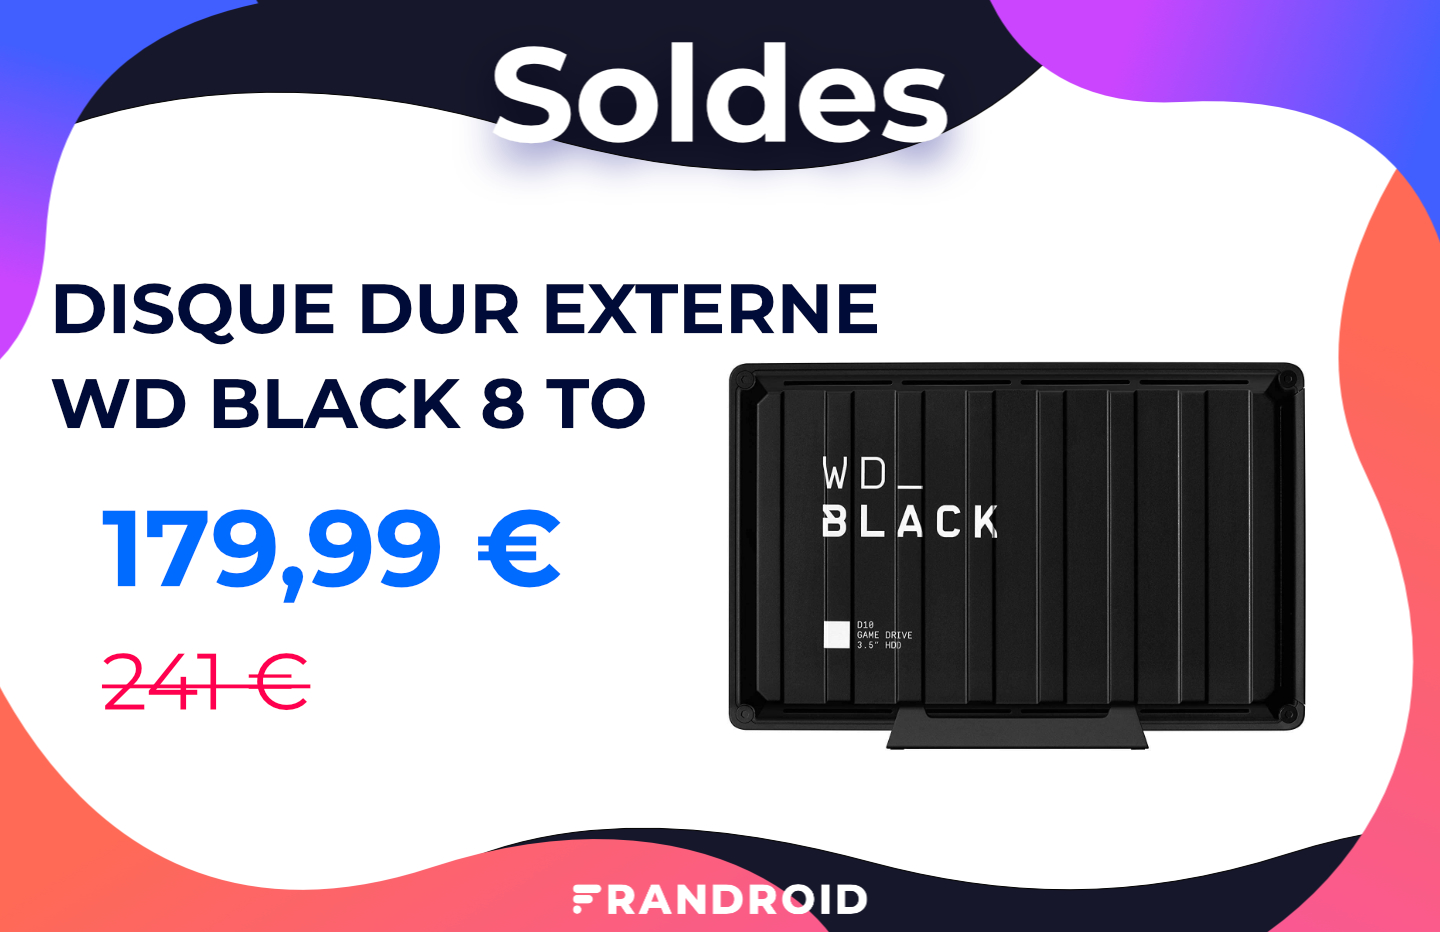 Ce disque externe WD Black 8 To passe sous la barre des 180 euros pendant les soldes